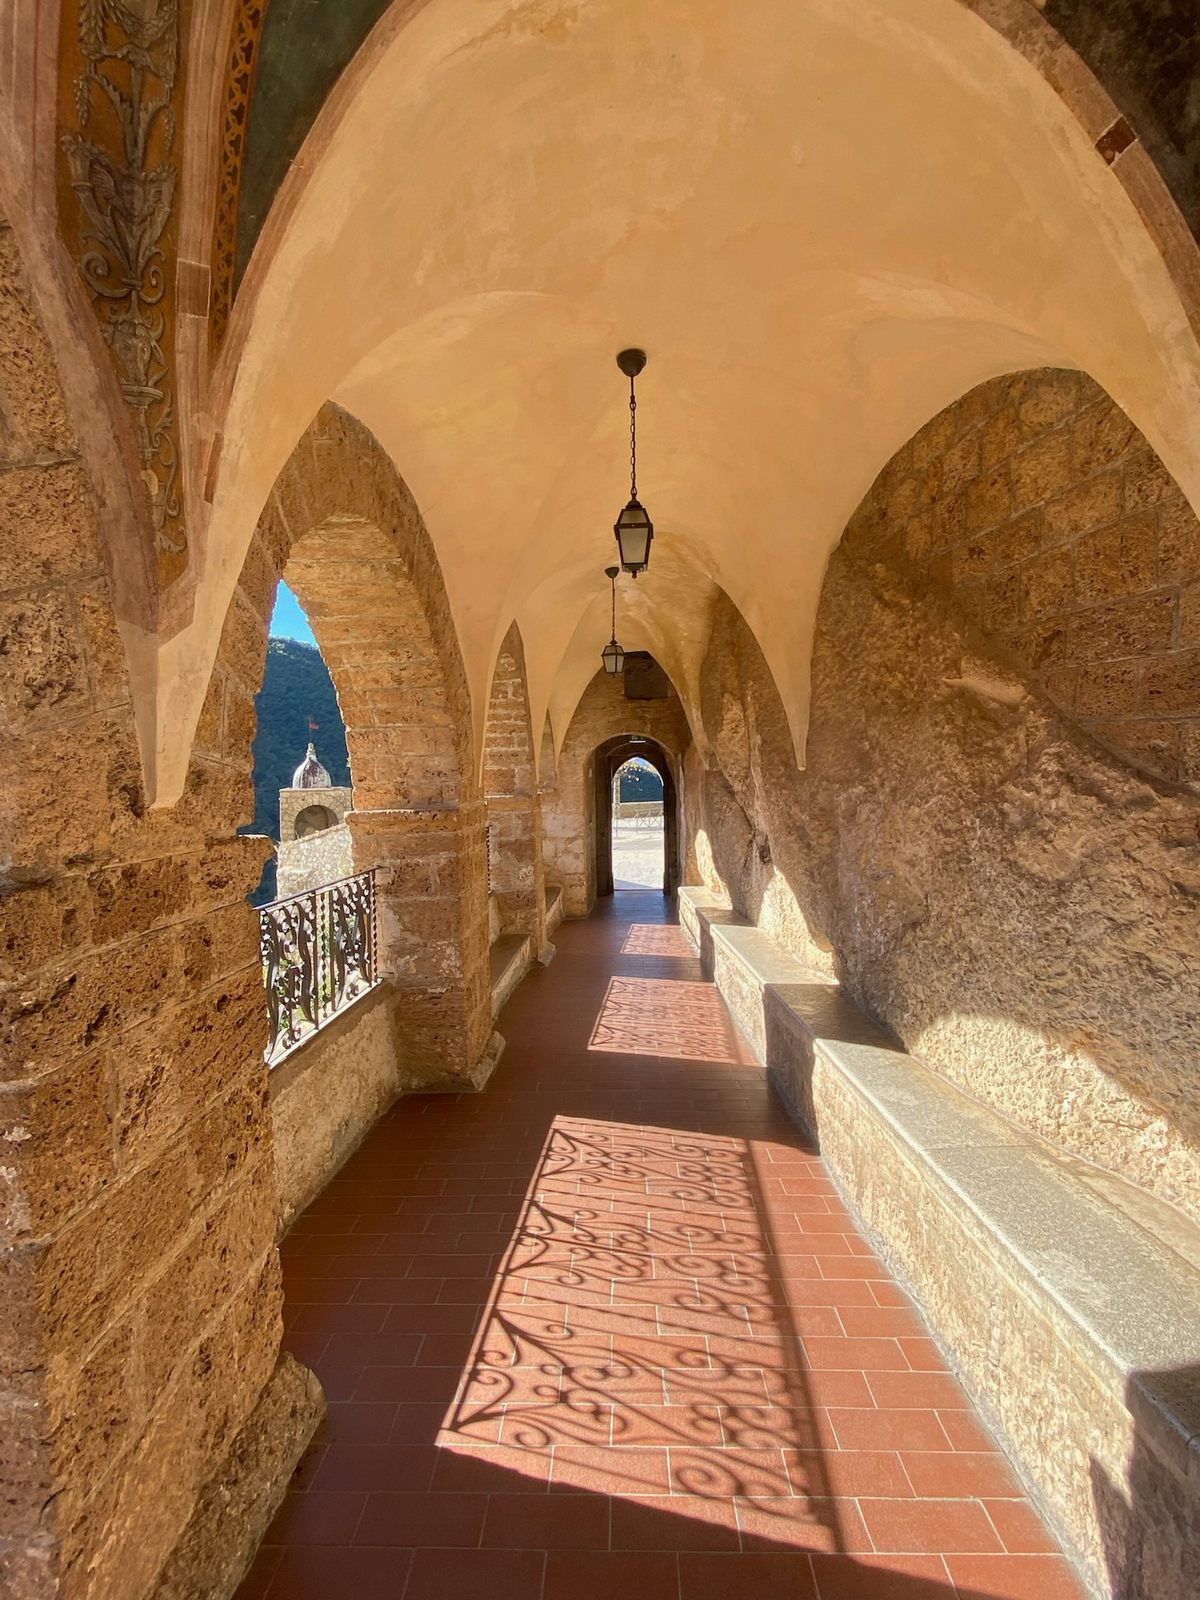 O Mosteiro de So Benedito est situado sobre uma caverna sagrada